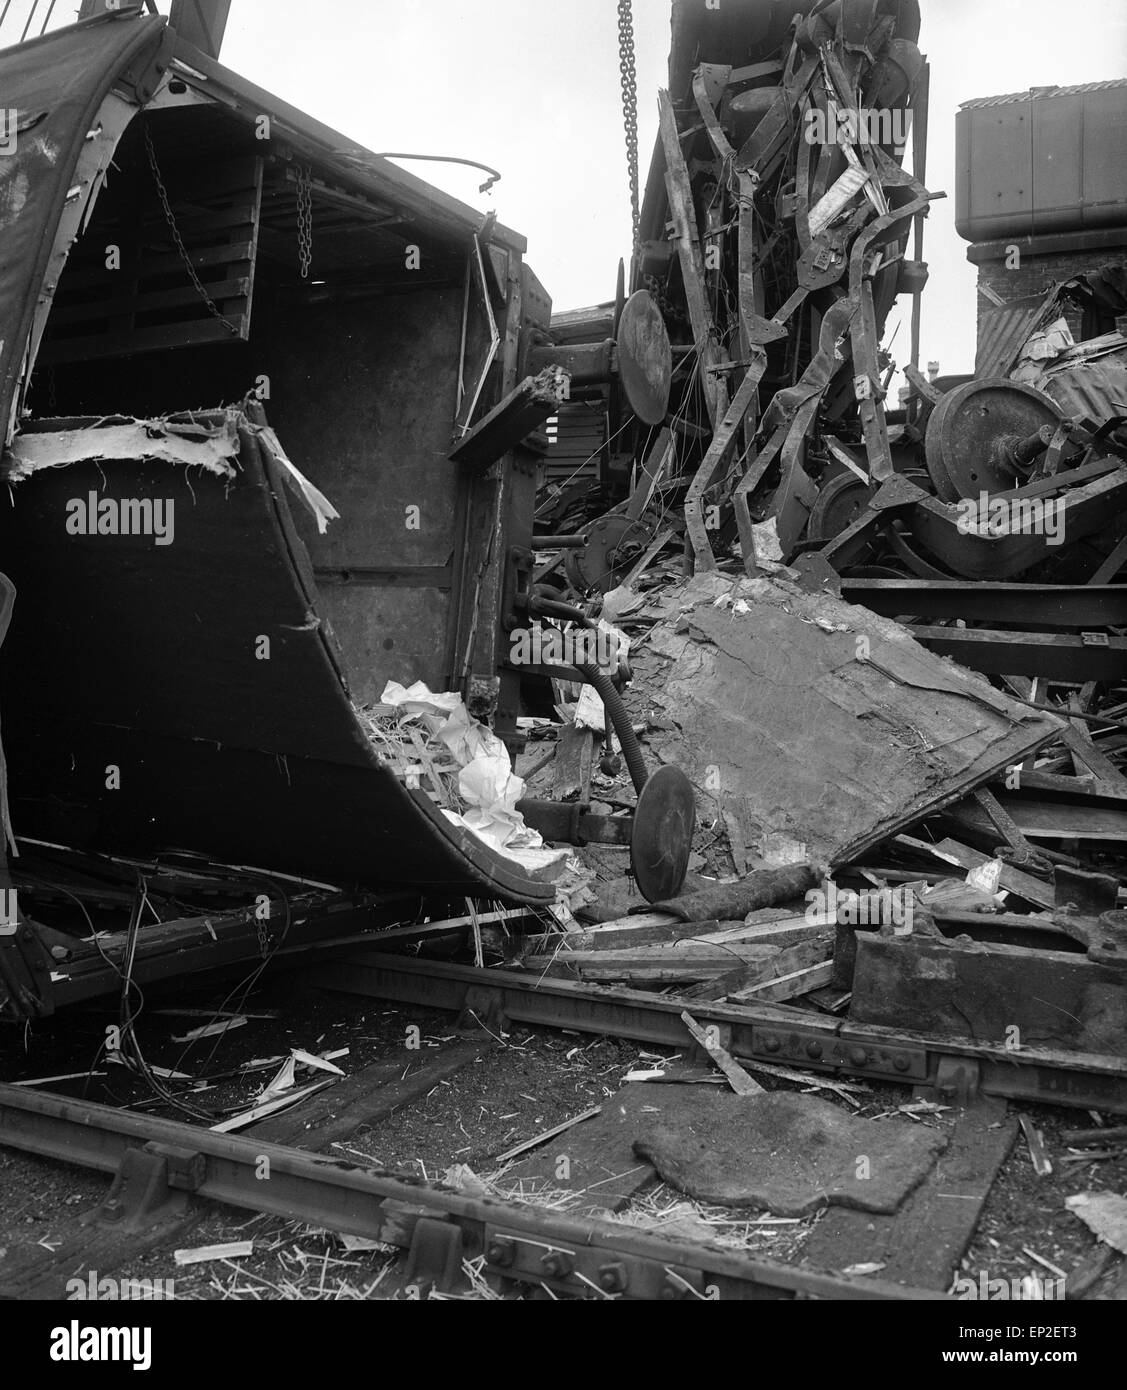 Incidente ferroviario a Ludlow, Shropshire, 6 settembre 1956. Stazione operatore British Railways (regione occidentale). Causa primaria è stato Errore del Driver . Segnale che viene fatto passare in corrispondenza di pericolo collisione posteriore, deragliamento telescopico. 0 morti, 3 feriti. Foto Stock